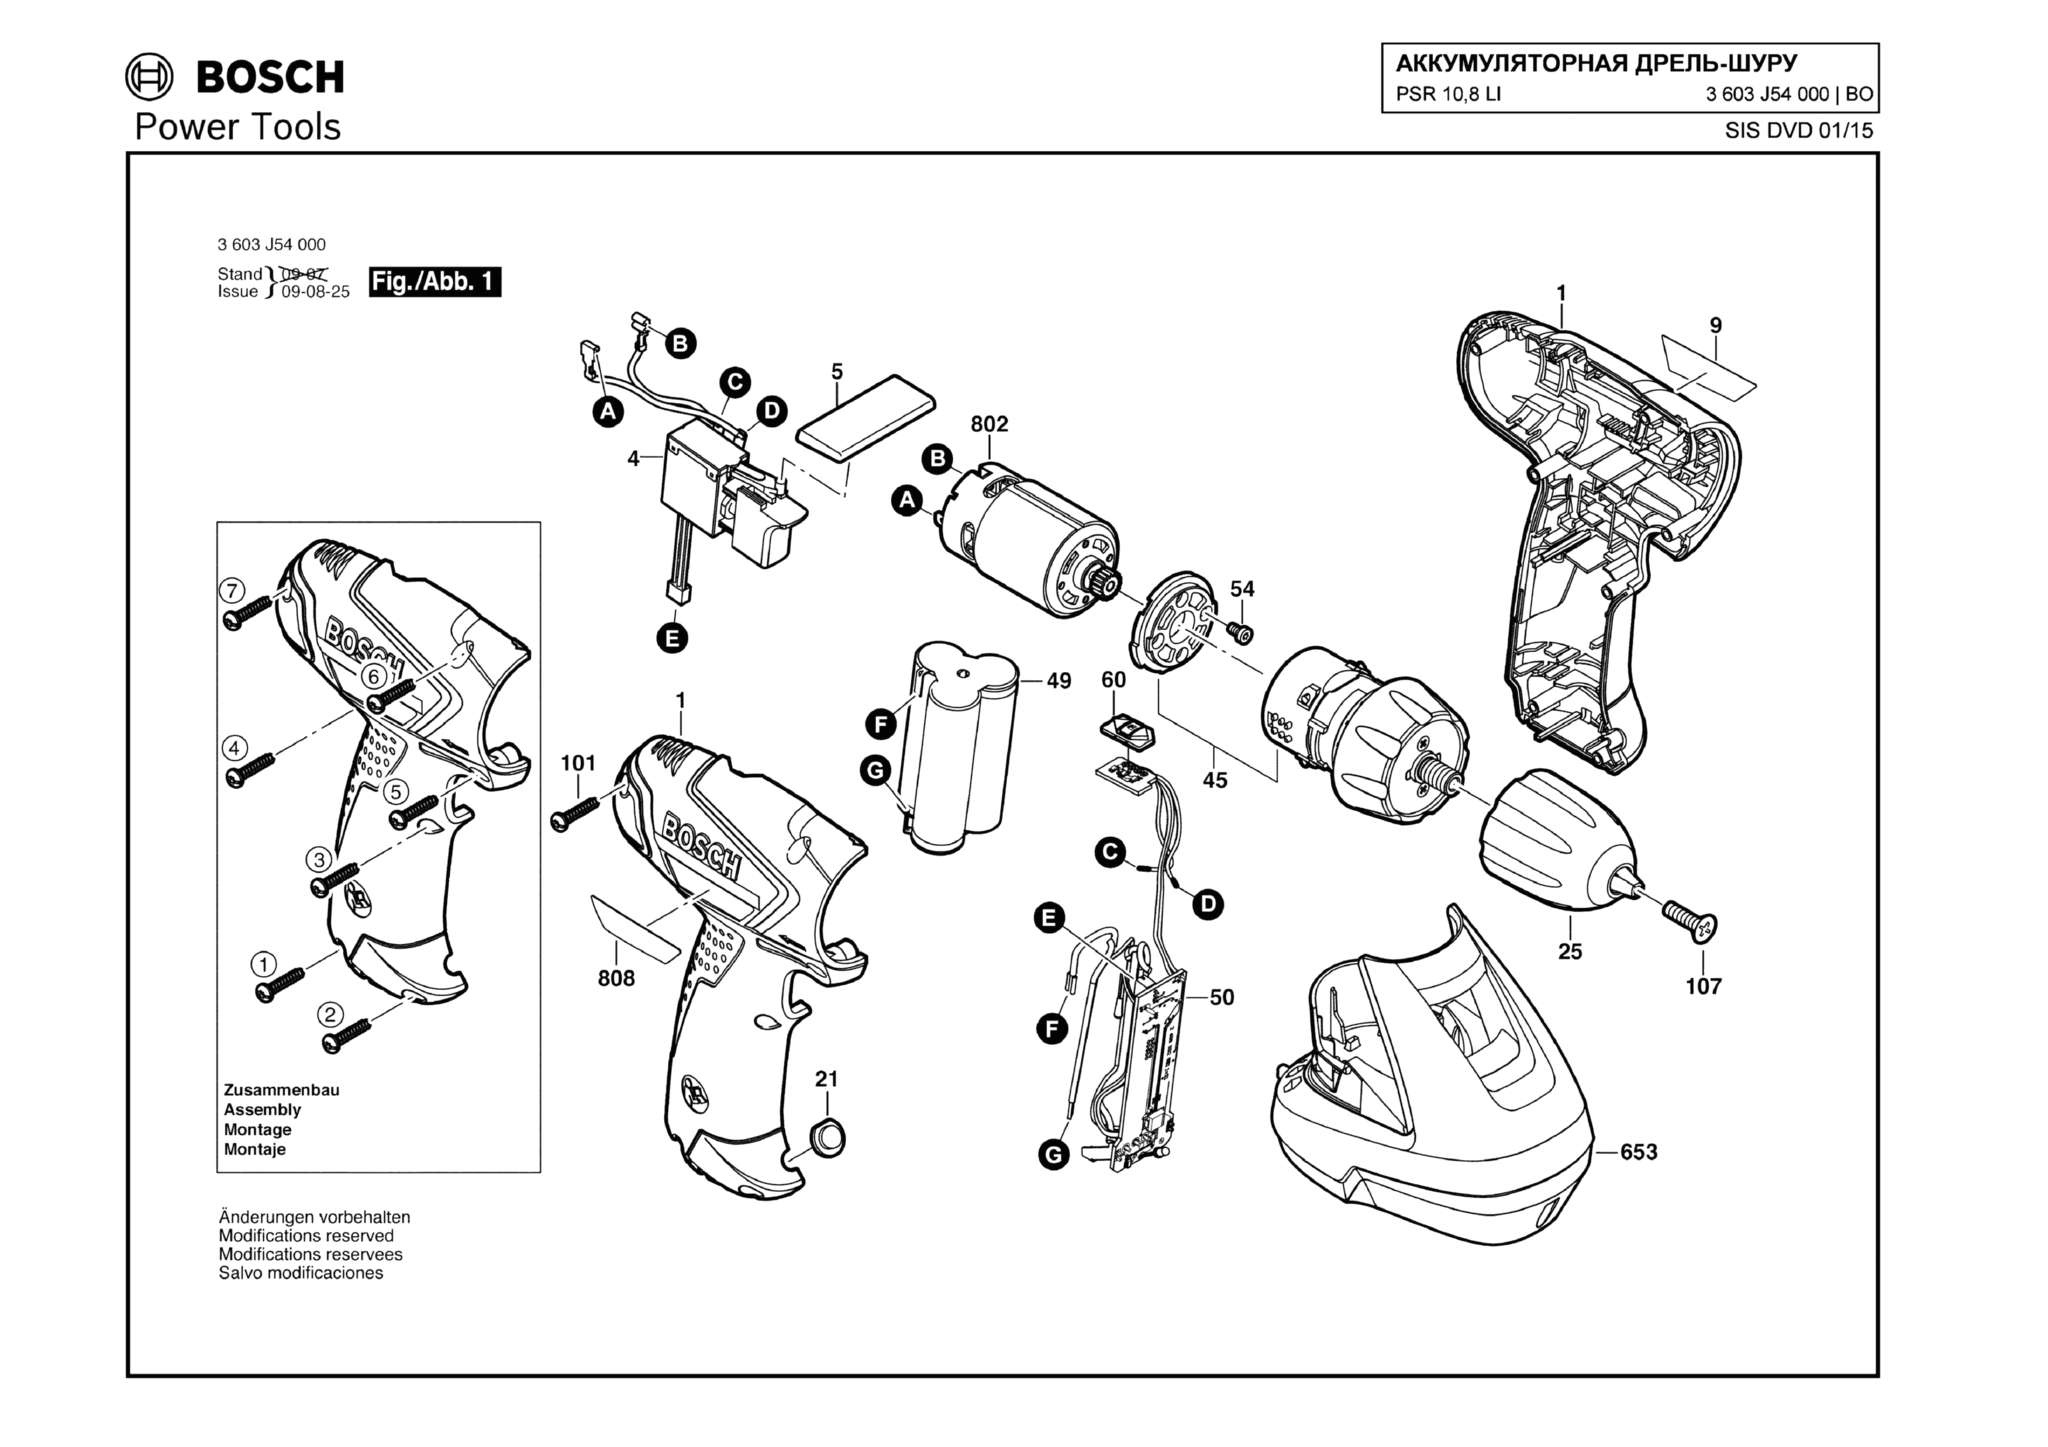 Запчасти, схема и деталировка Bosch PSR 10,8 LI (ТИП 3603J54000)